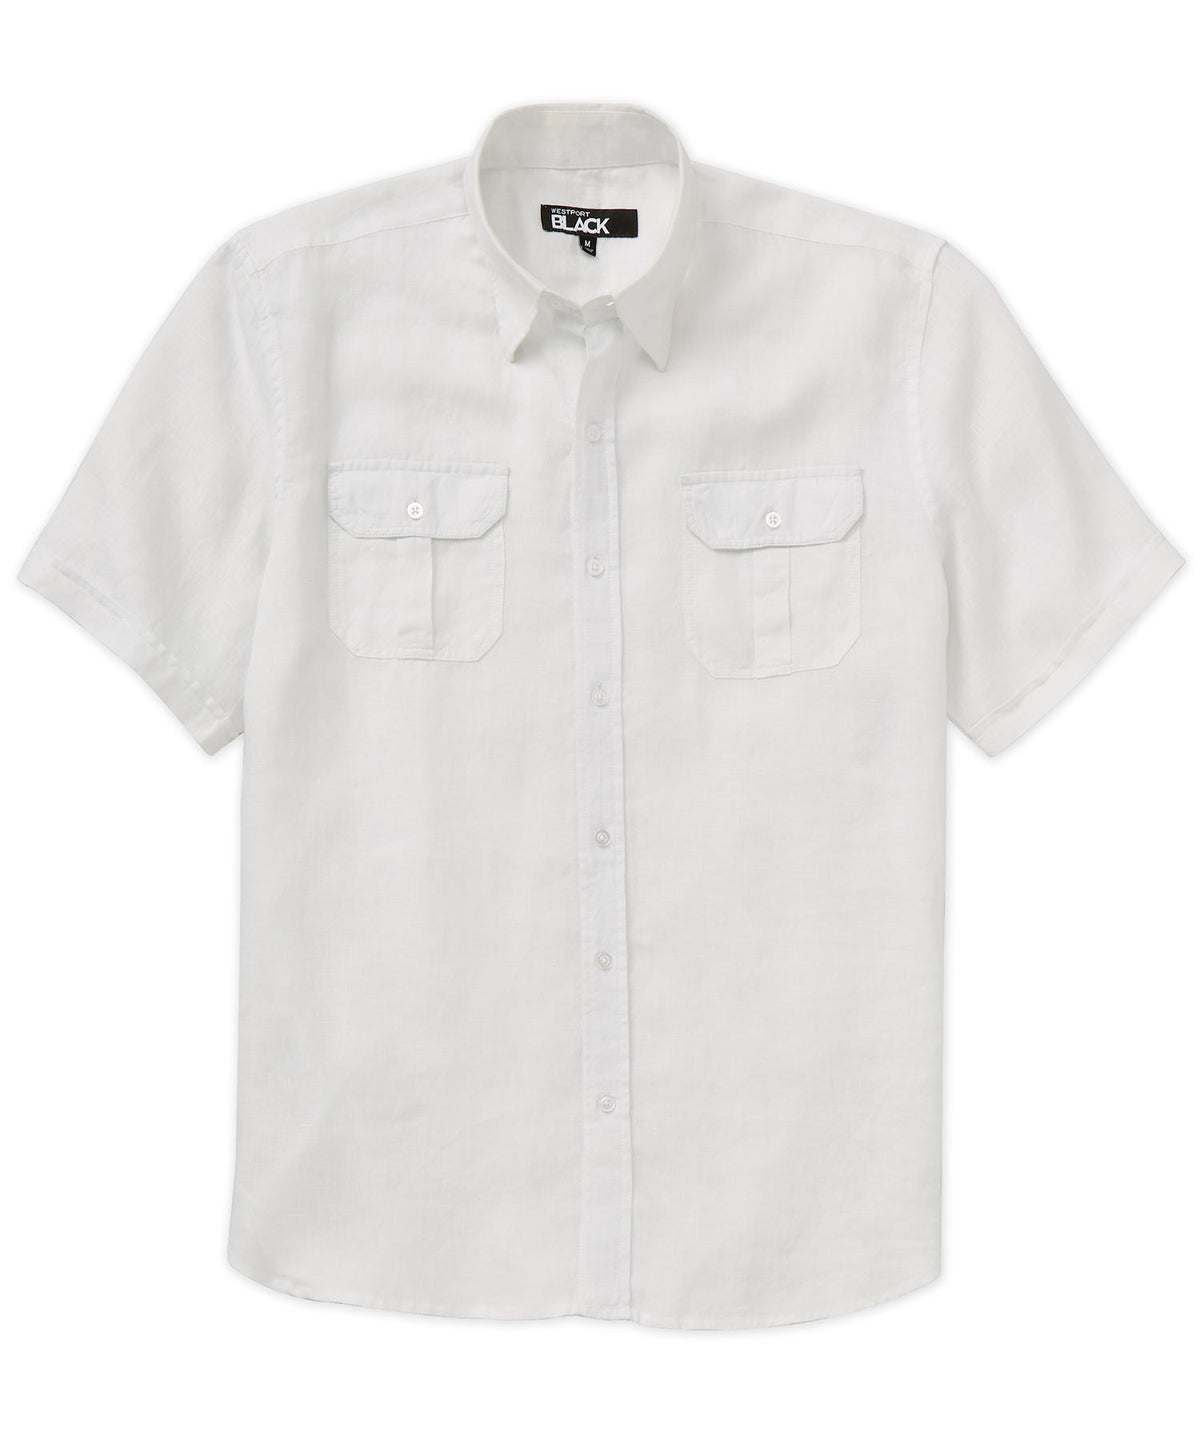 Westport Black Short Sleeve Linen Button-Under Collar Safari Shirt, Men's Big & Tall